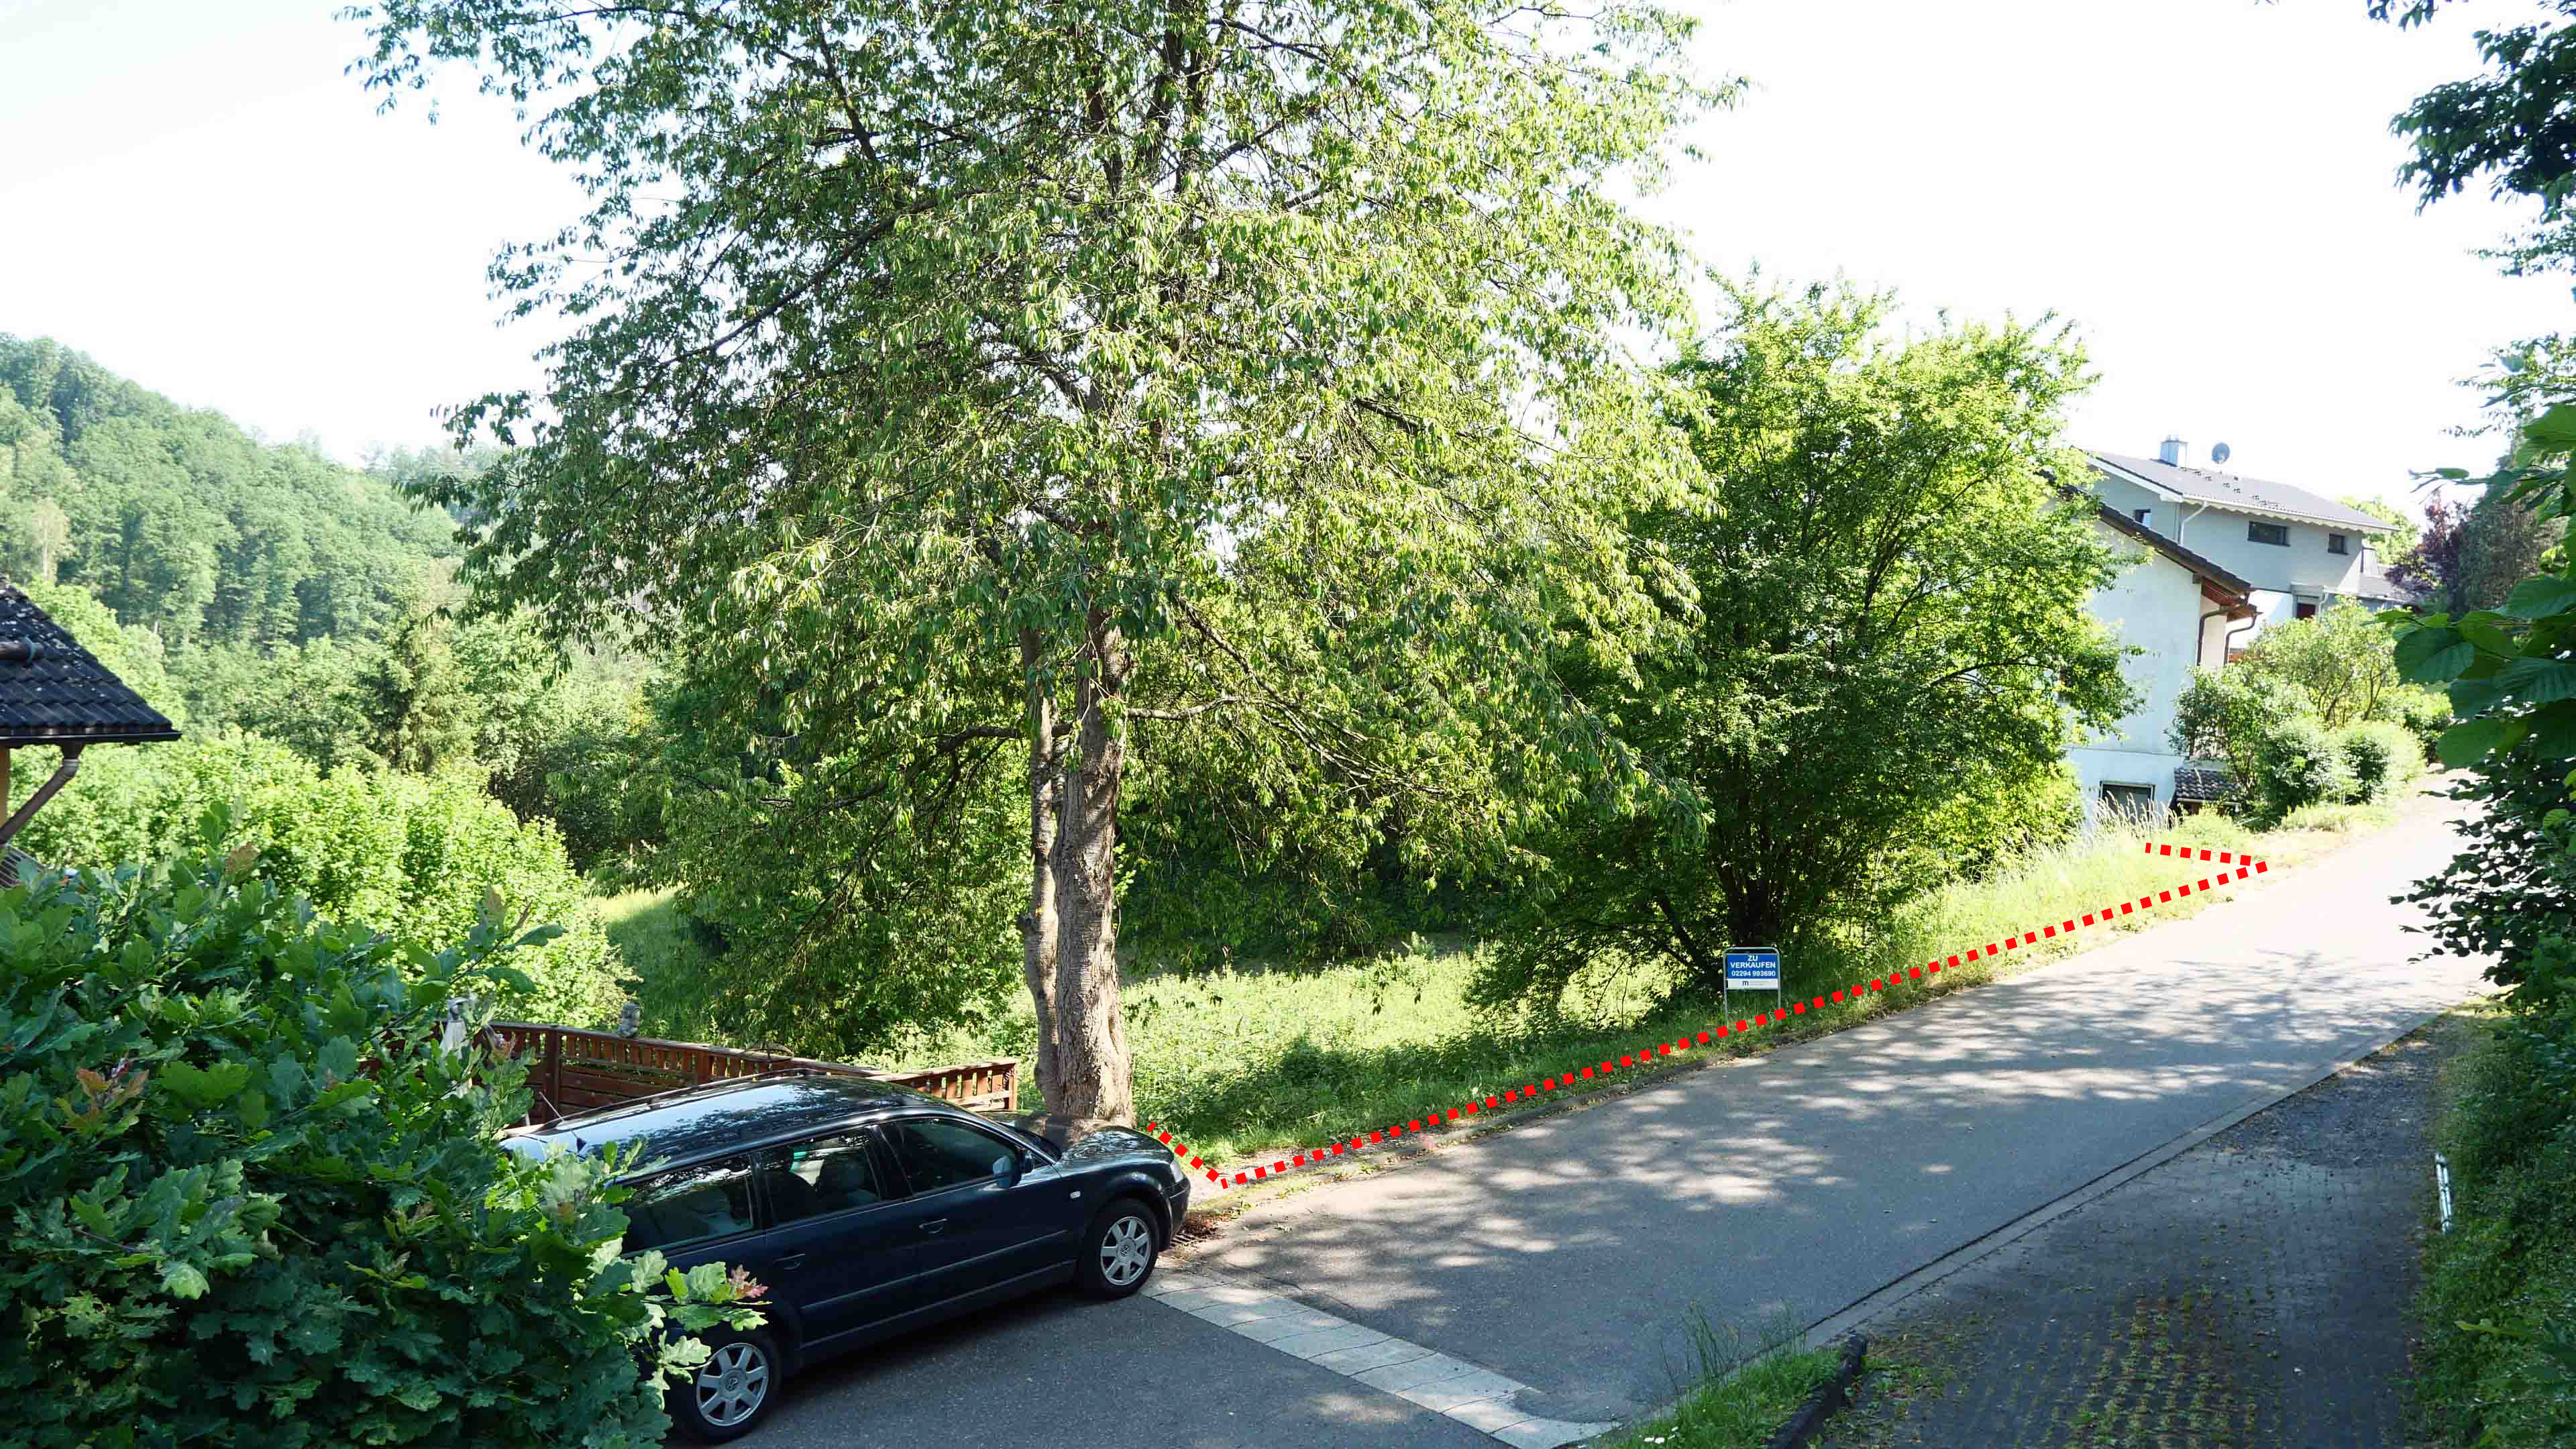 Morsbach-Holpe: Idealer Bauplatz für ein Haus mit mehreren Etagen, in einer grünen, verkehrsberuhigten Straße gelegen